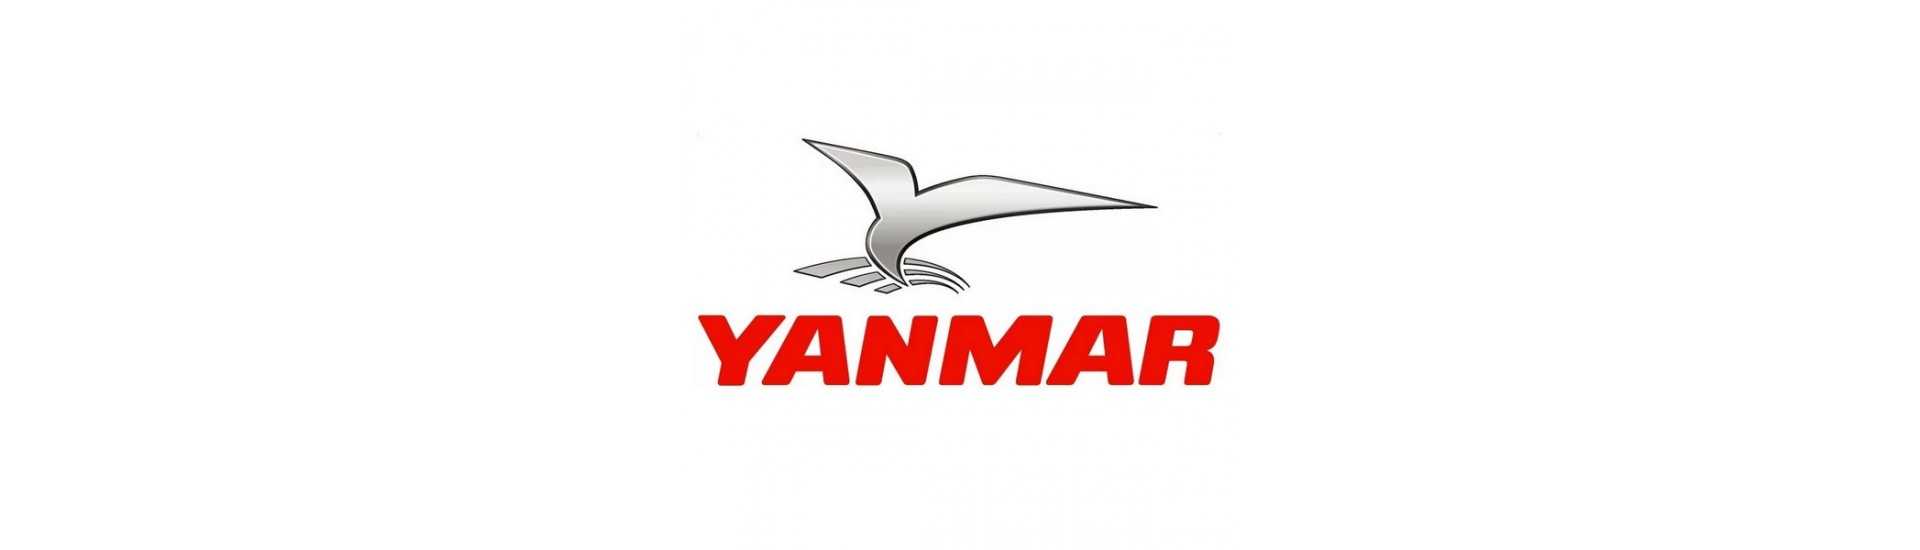 Sonde de température Yanmar au meilleur prix pour voiture sans permis